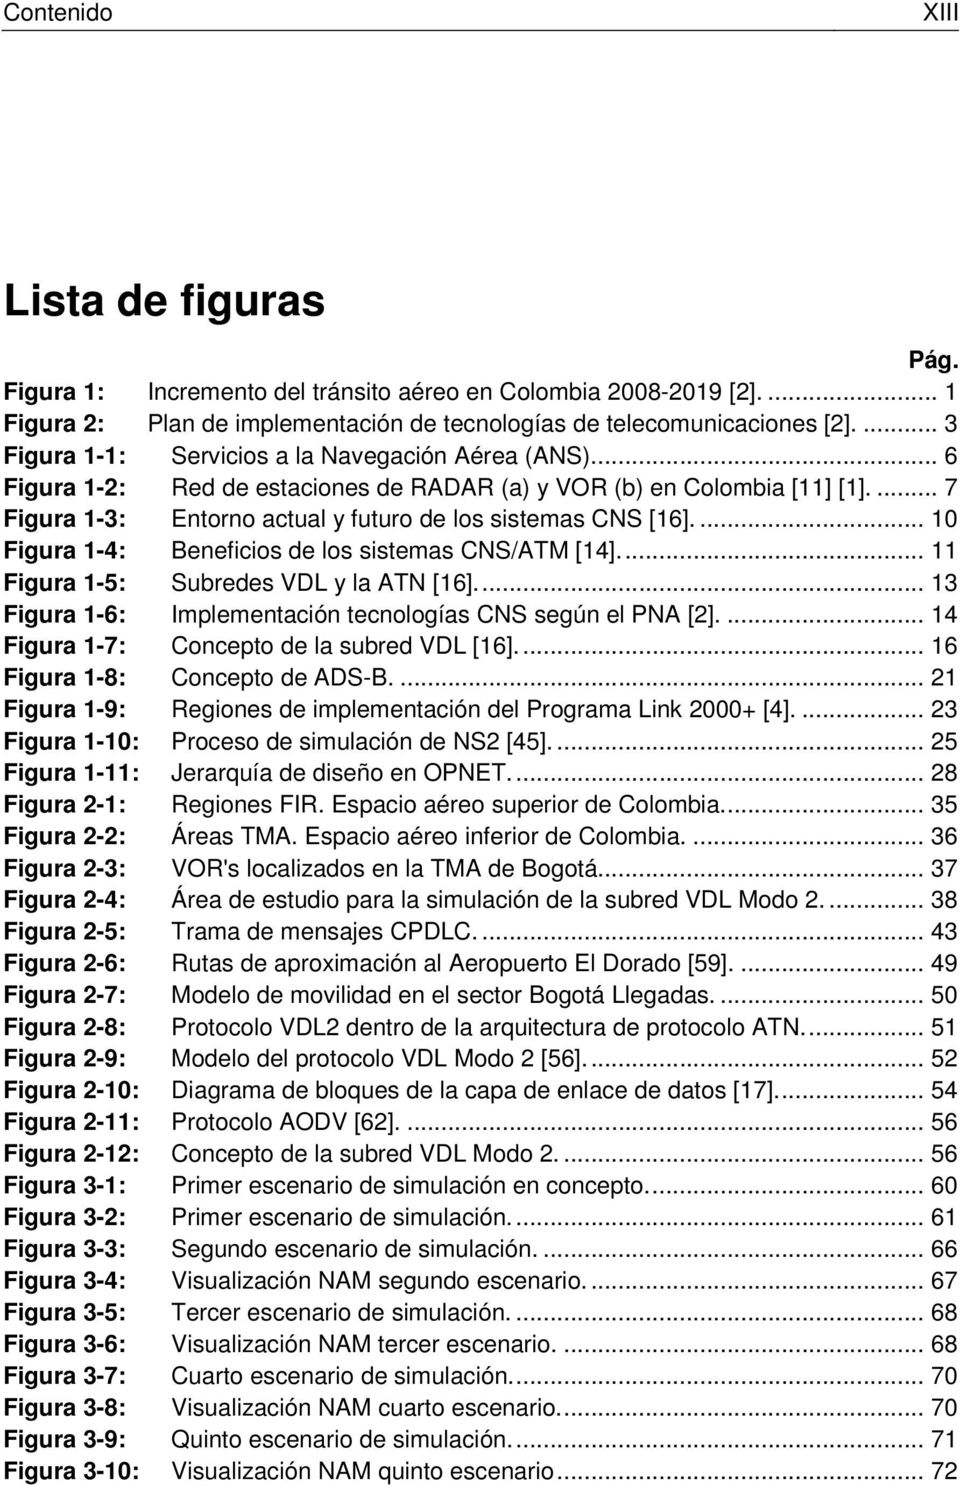 ... 10 Figura 1-4: Beneficios de los sistemas CNS/ATM [14]... 11 Figura 1-5: Subredes VDL y la ATN [16]... 13 Figura 1-6: Implementación tecnologías CNS según el PNA [2].